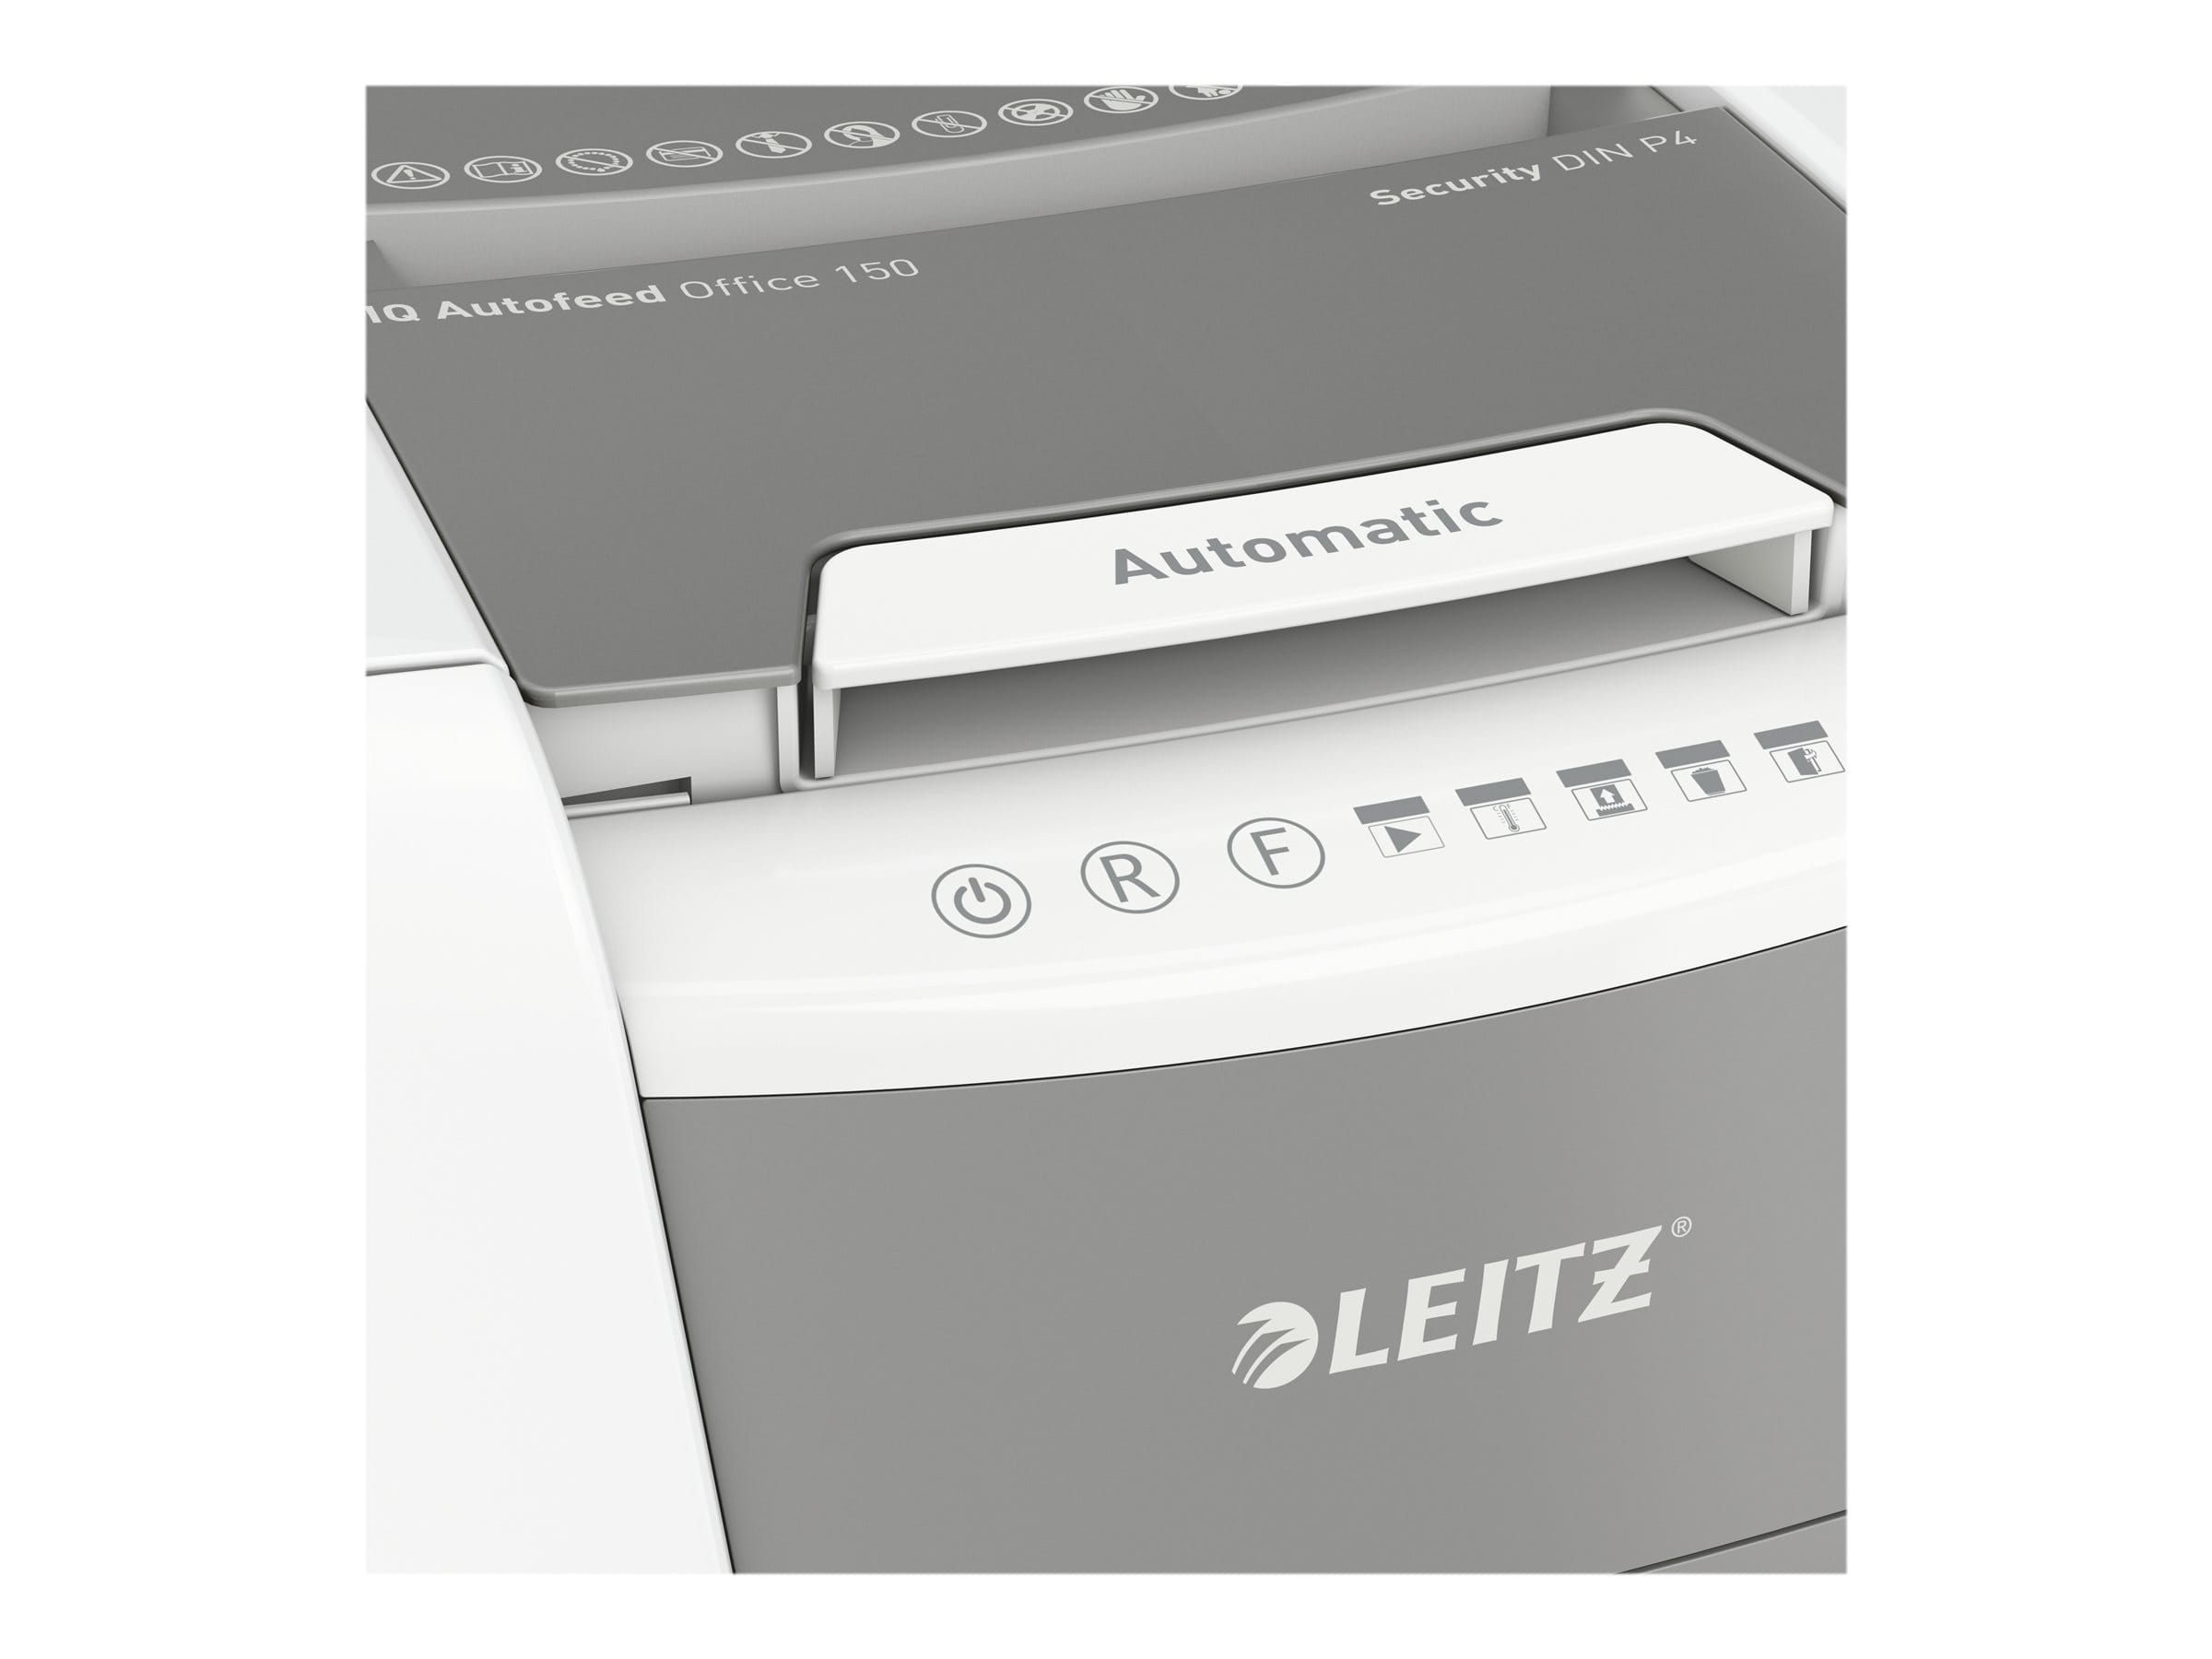 Esselte Leitz IQ AutoFeed Office 150 P4 - Vorzerkleinerer